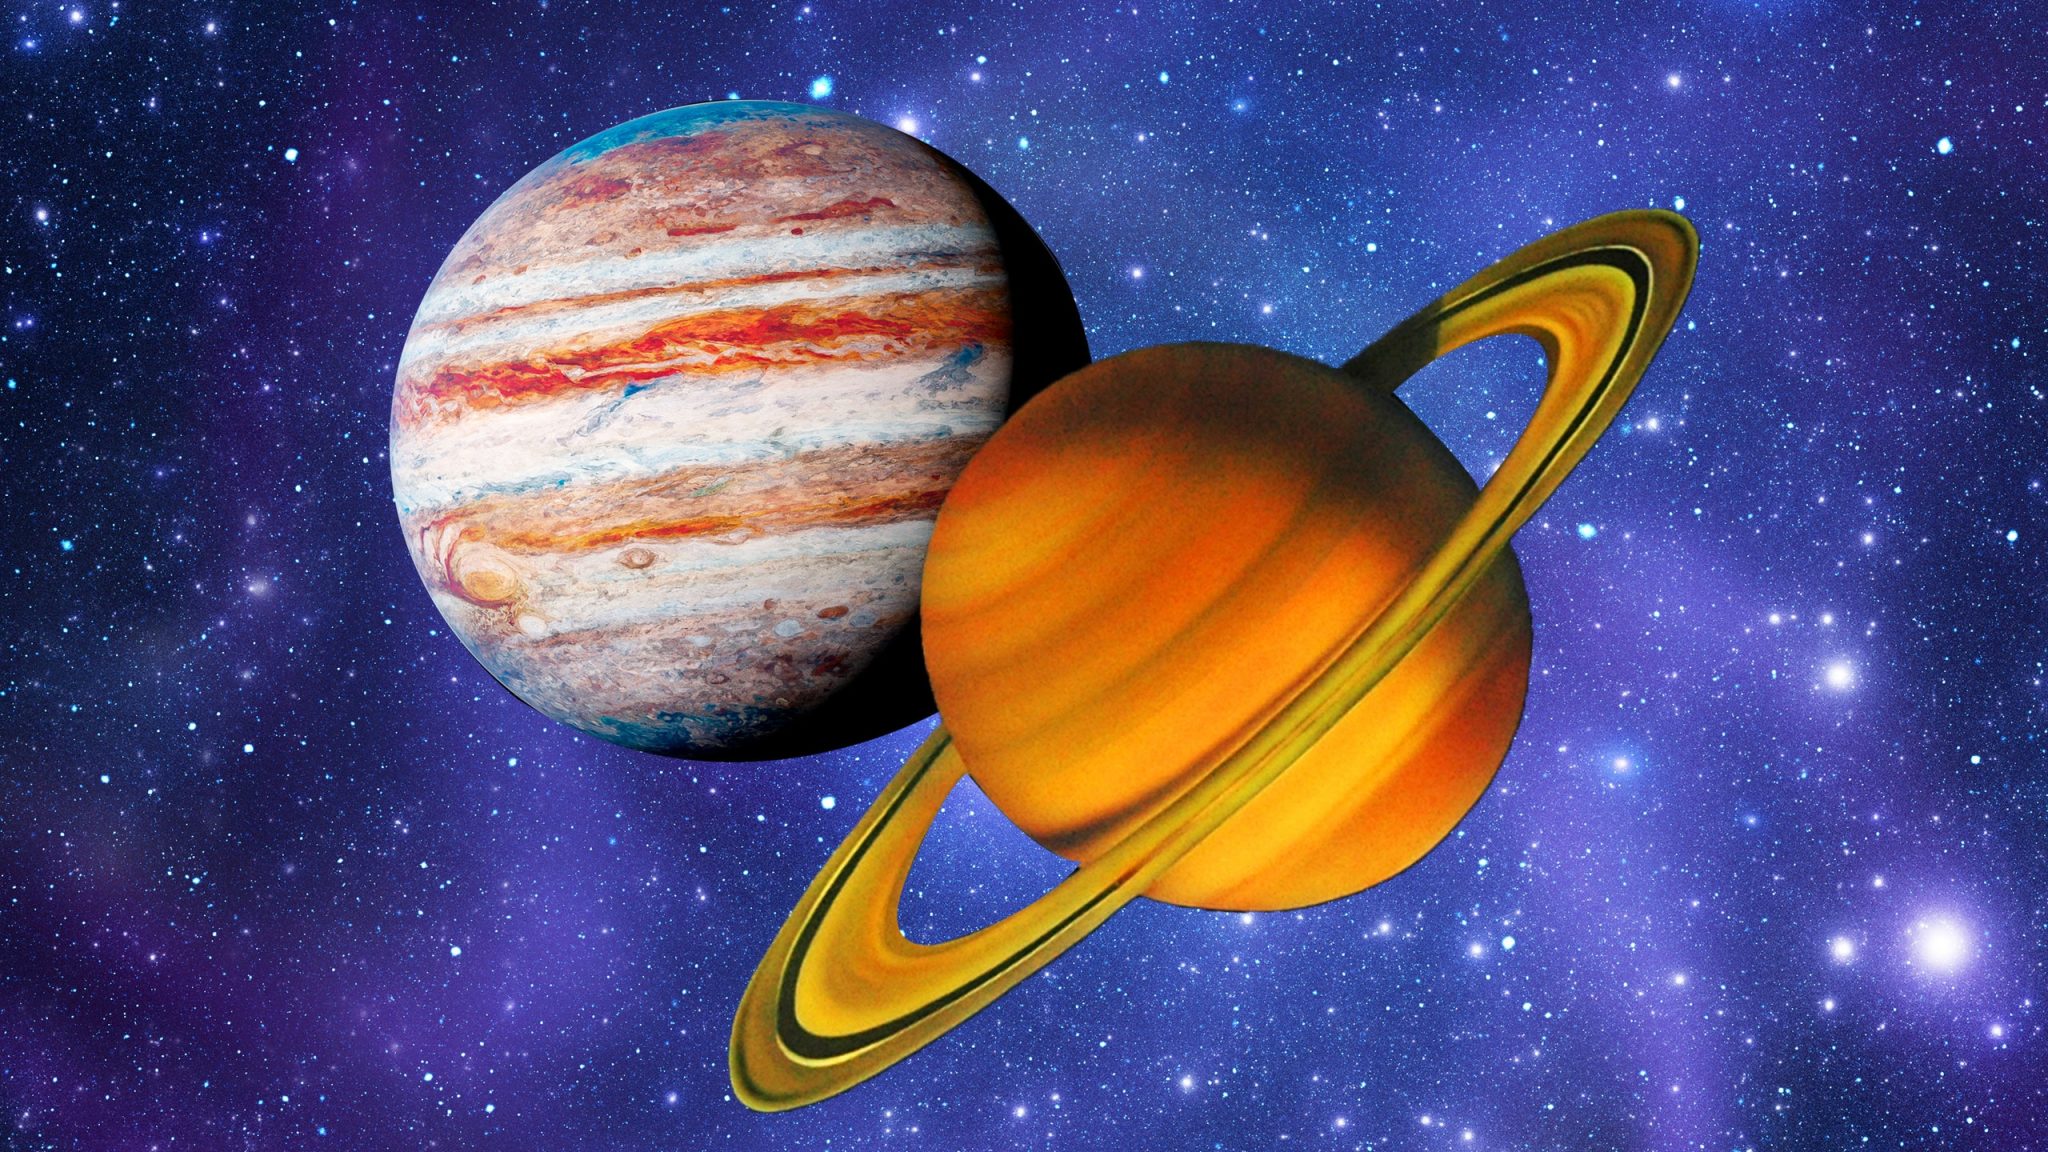 Saturn və Yupiter ən varlı planetlərdir - MARAQLI FAKTLAR